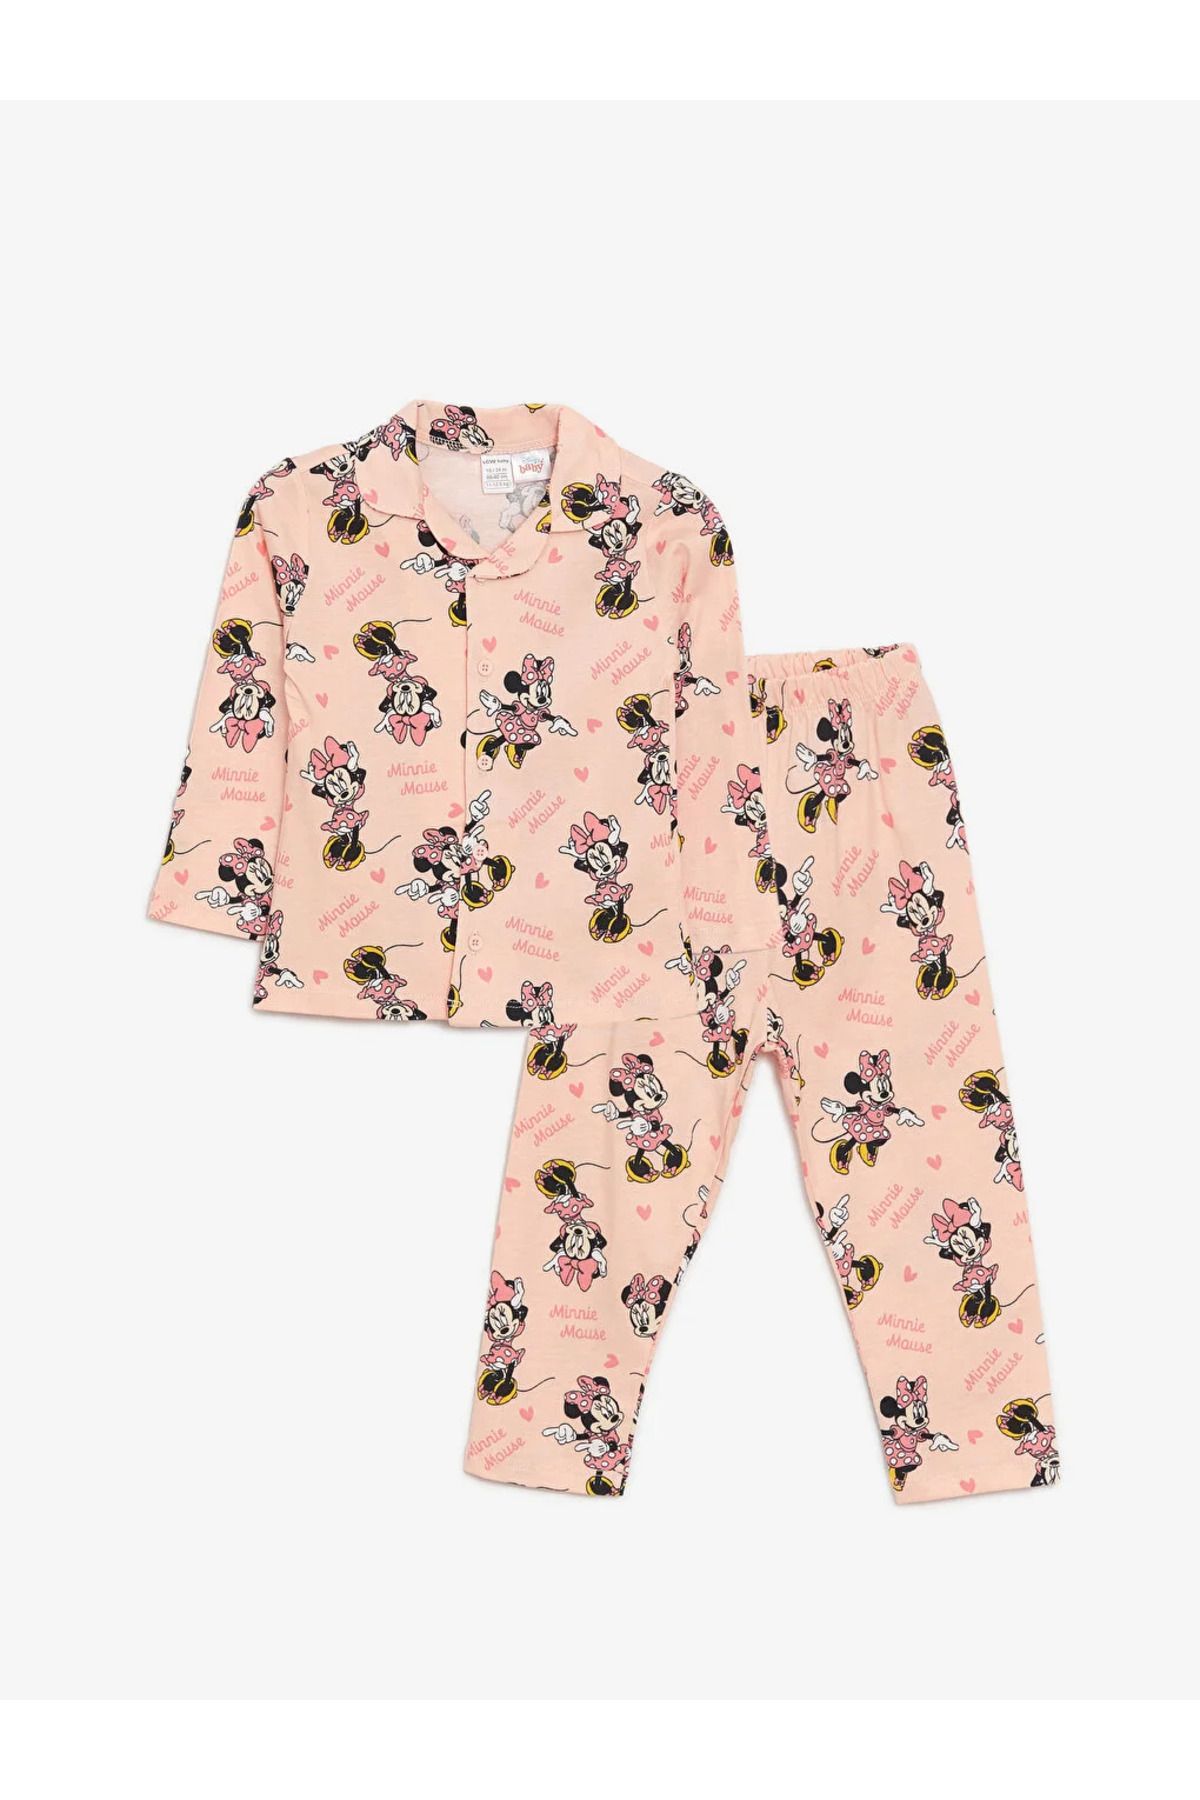 LC Waikiki LCW baby Gömlek Yaka Uzun Kollu Minnie Mouse Baskılı Kız Bebek Pijama Takım